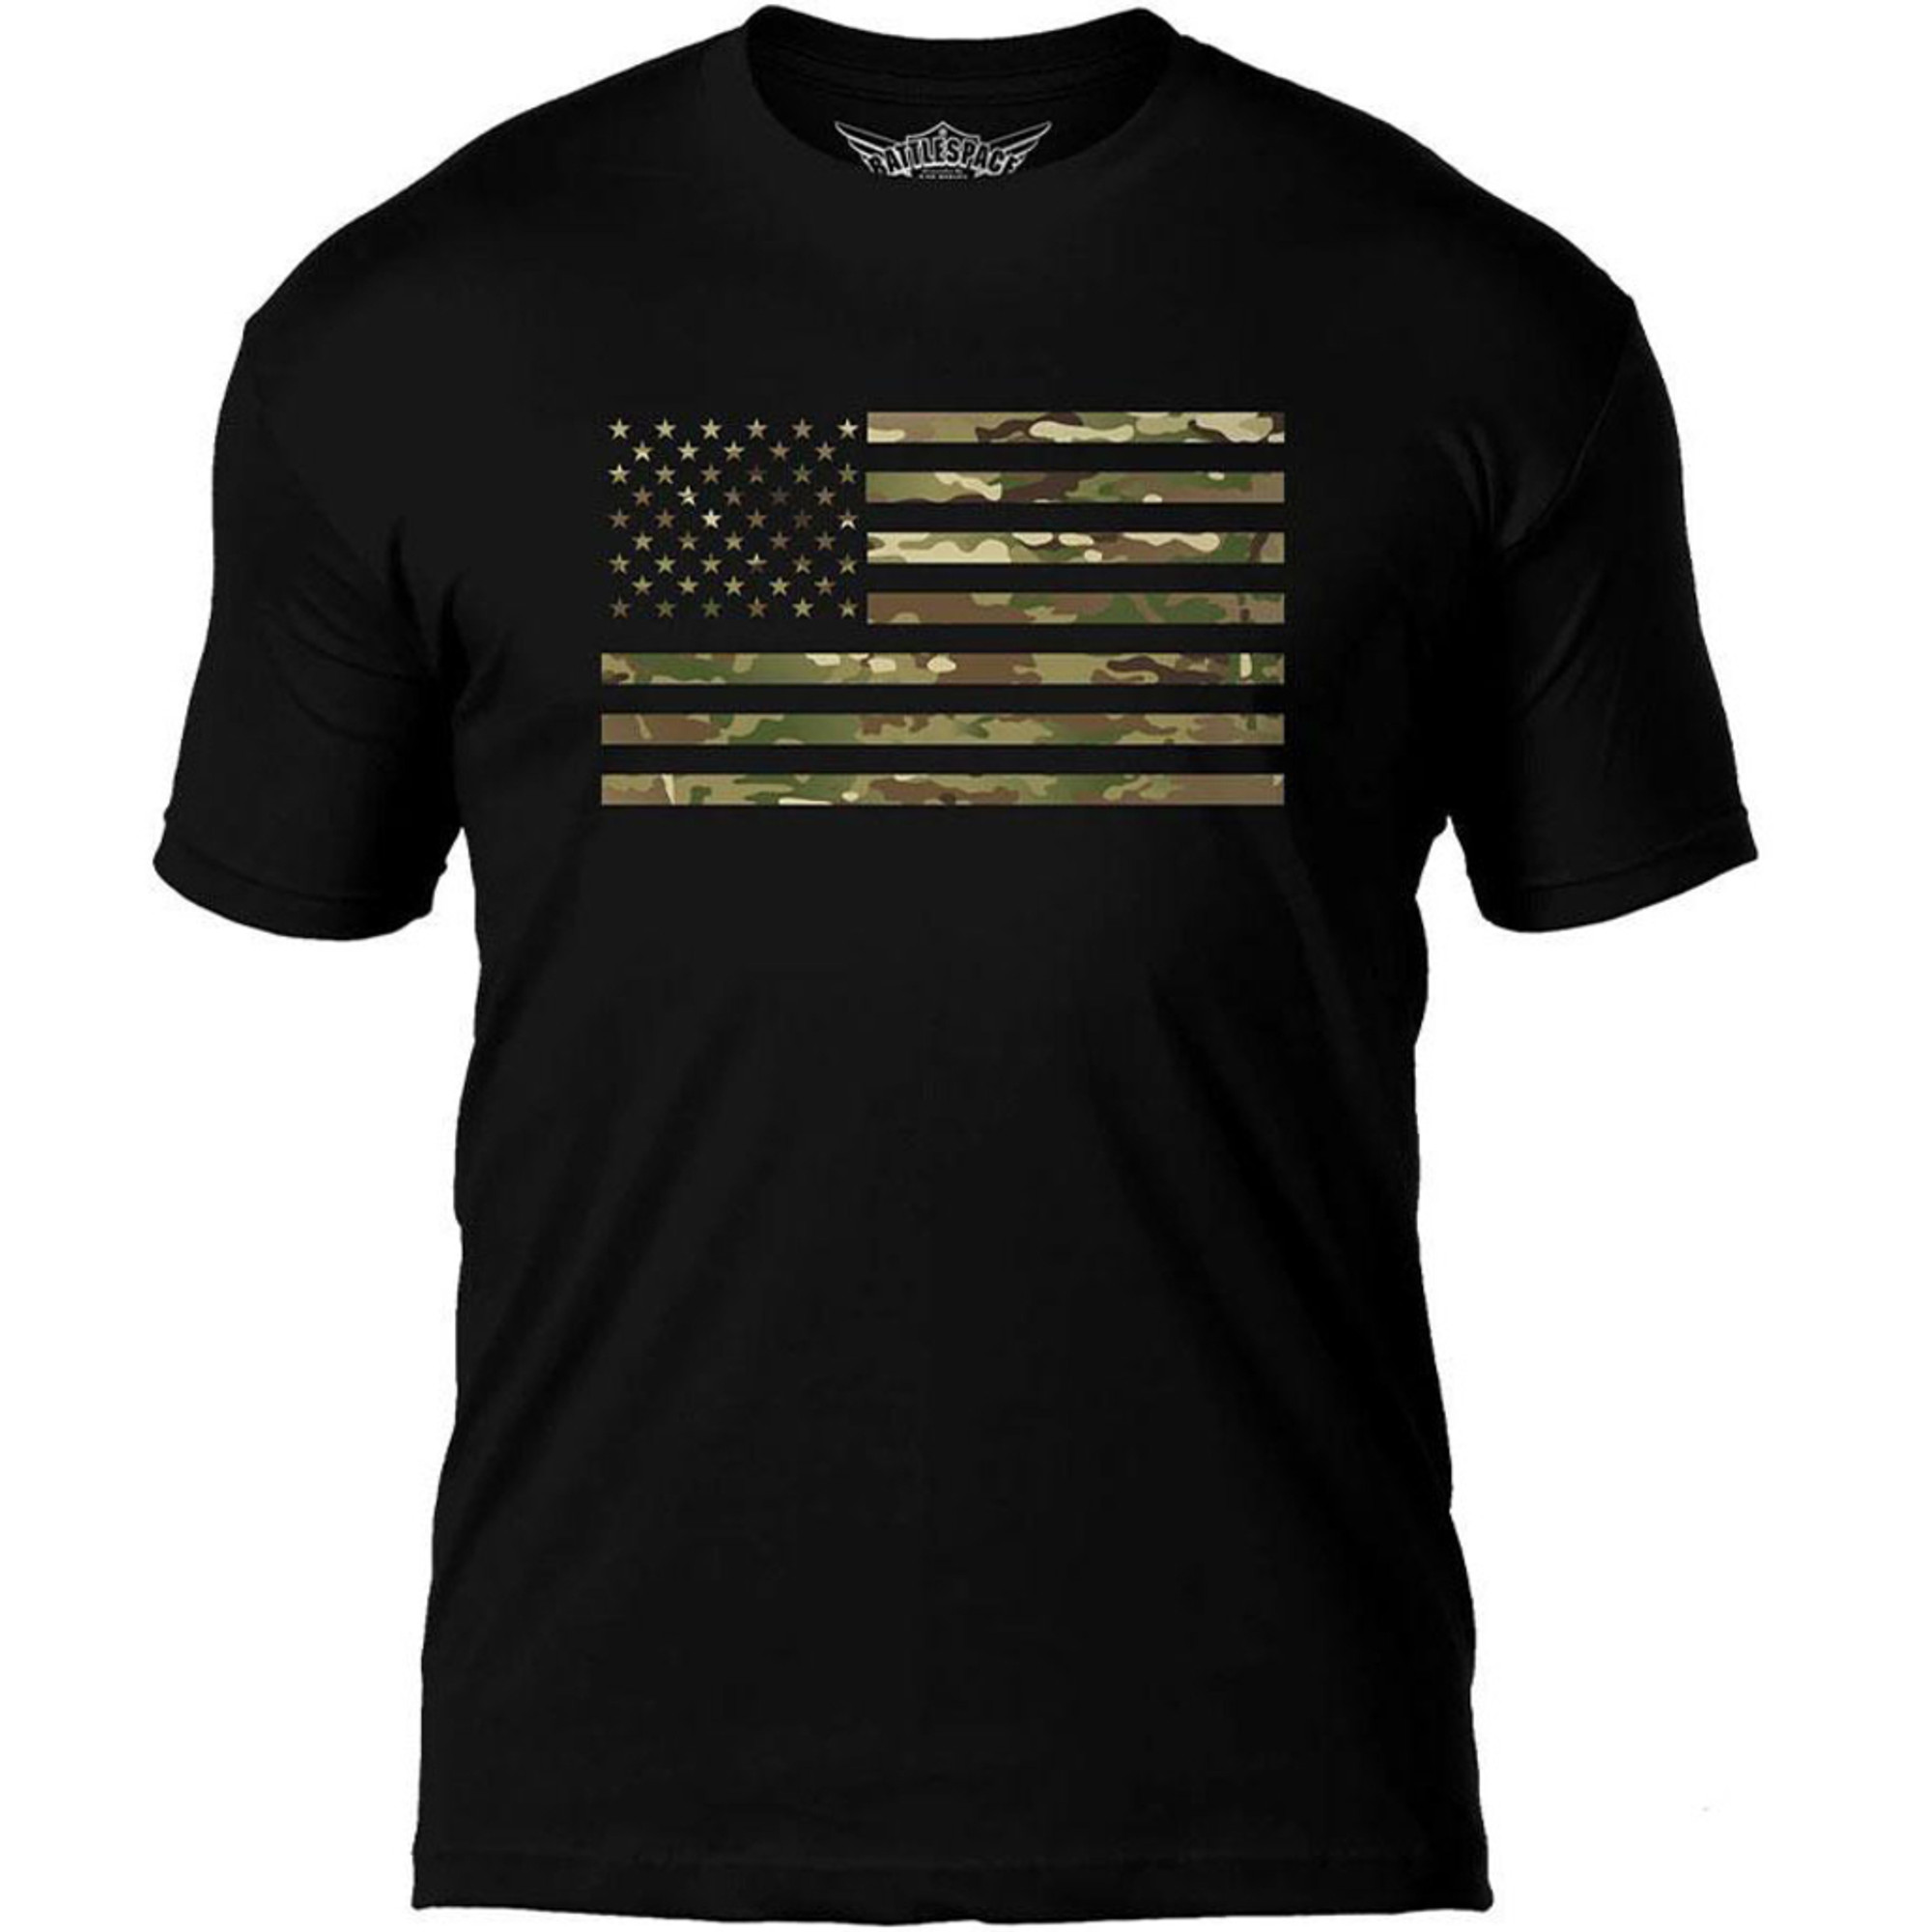 7.62 Designs "Flag Battlespace" Premium Men's Patriotic T-Shirt (Size: Medium / Camo Print)